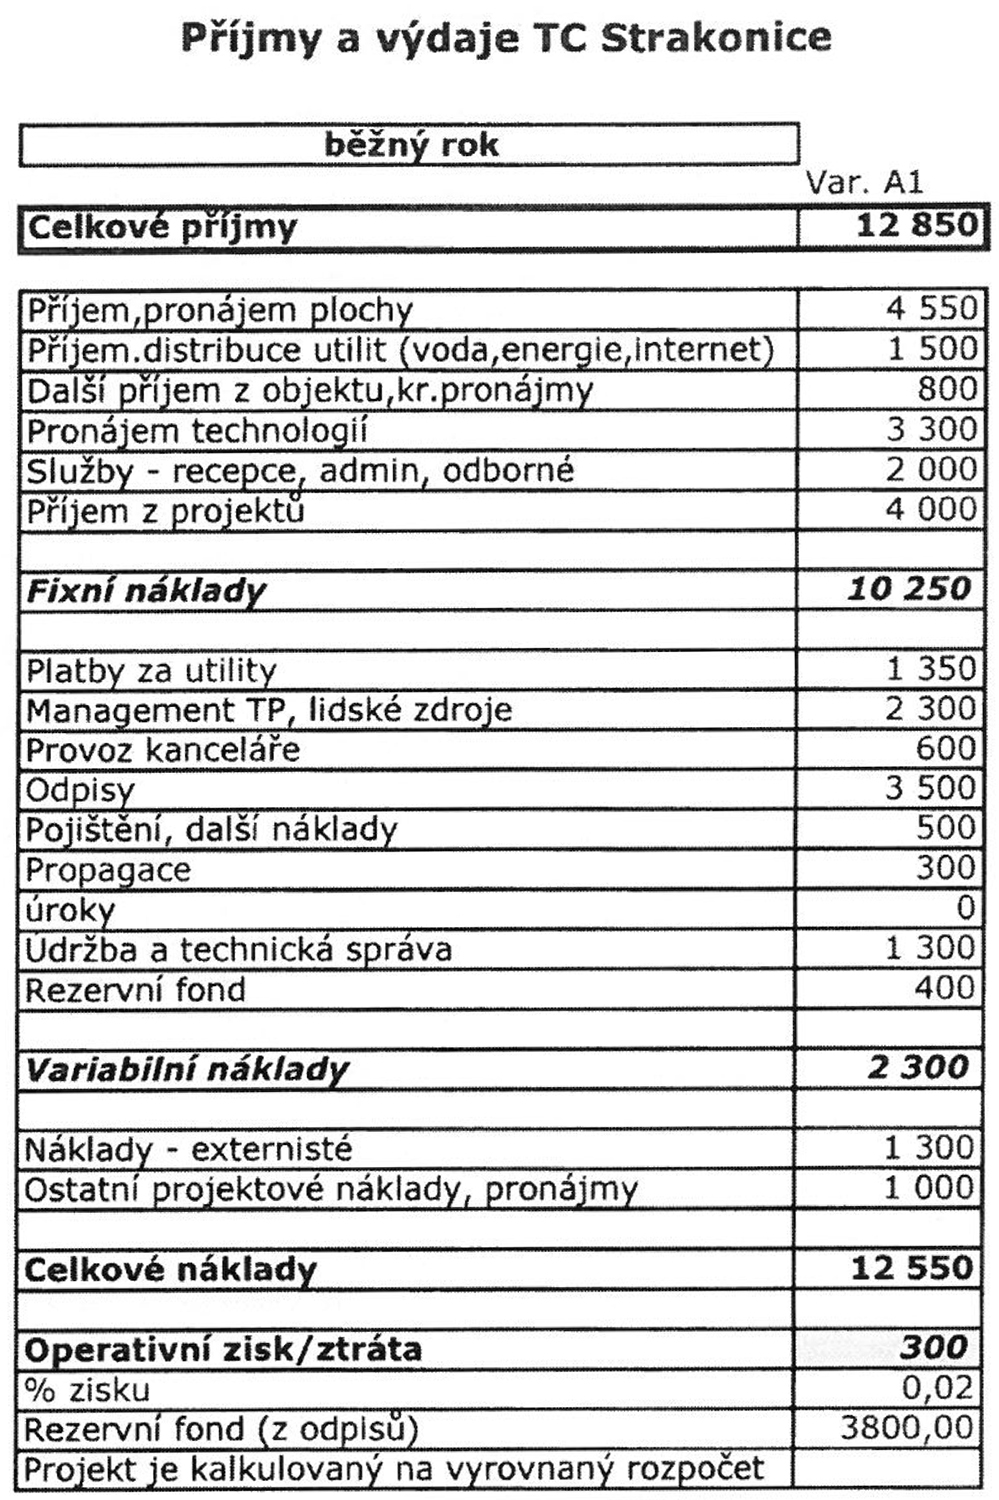 Příloha „Výnosy a náklady TCSt“ projektu Strakonické Veřejnosti za 86 000 Kč z městského rozpočtu = vyhozené peníze z okna